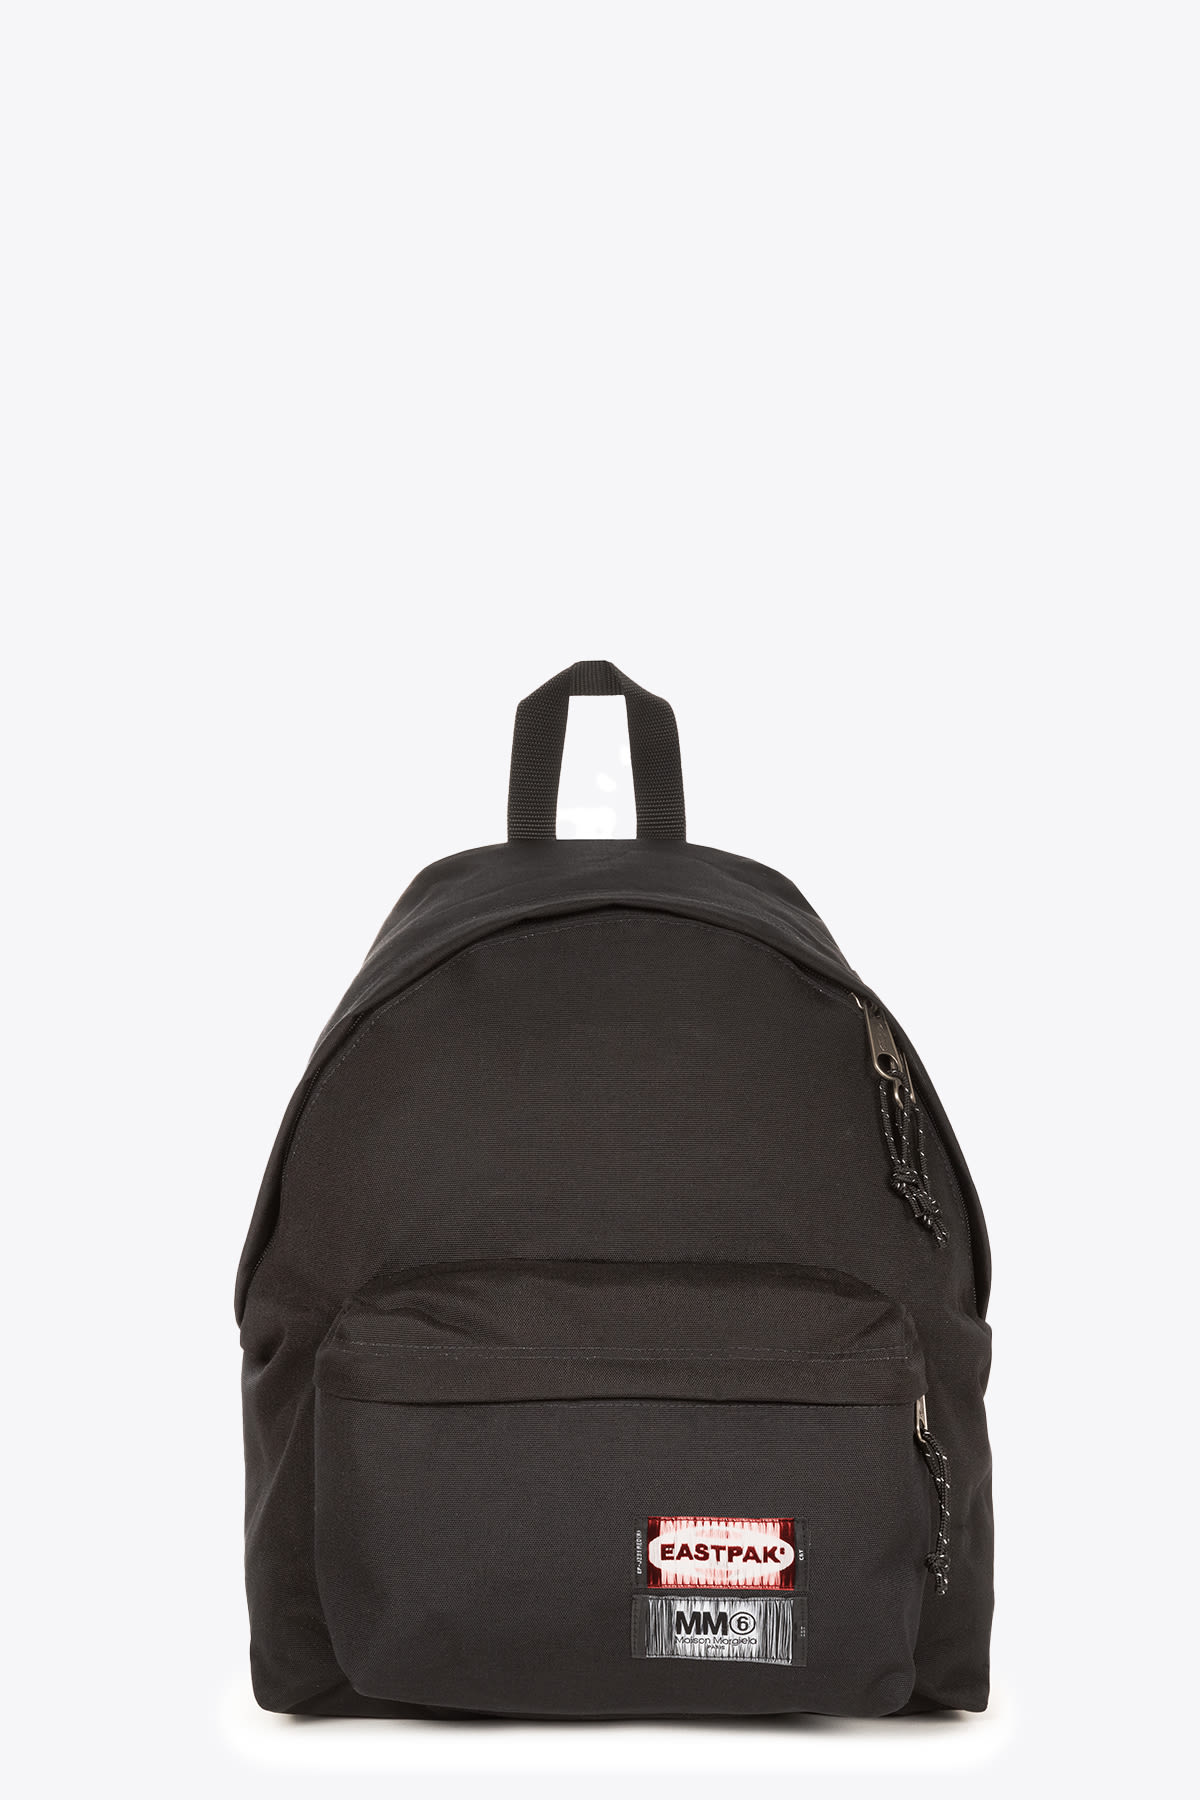 MM6 Maison Margiela Reversible Backpack Eastpak black nylon reversible backpack